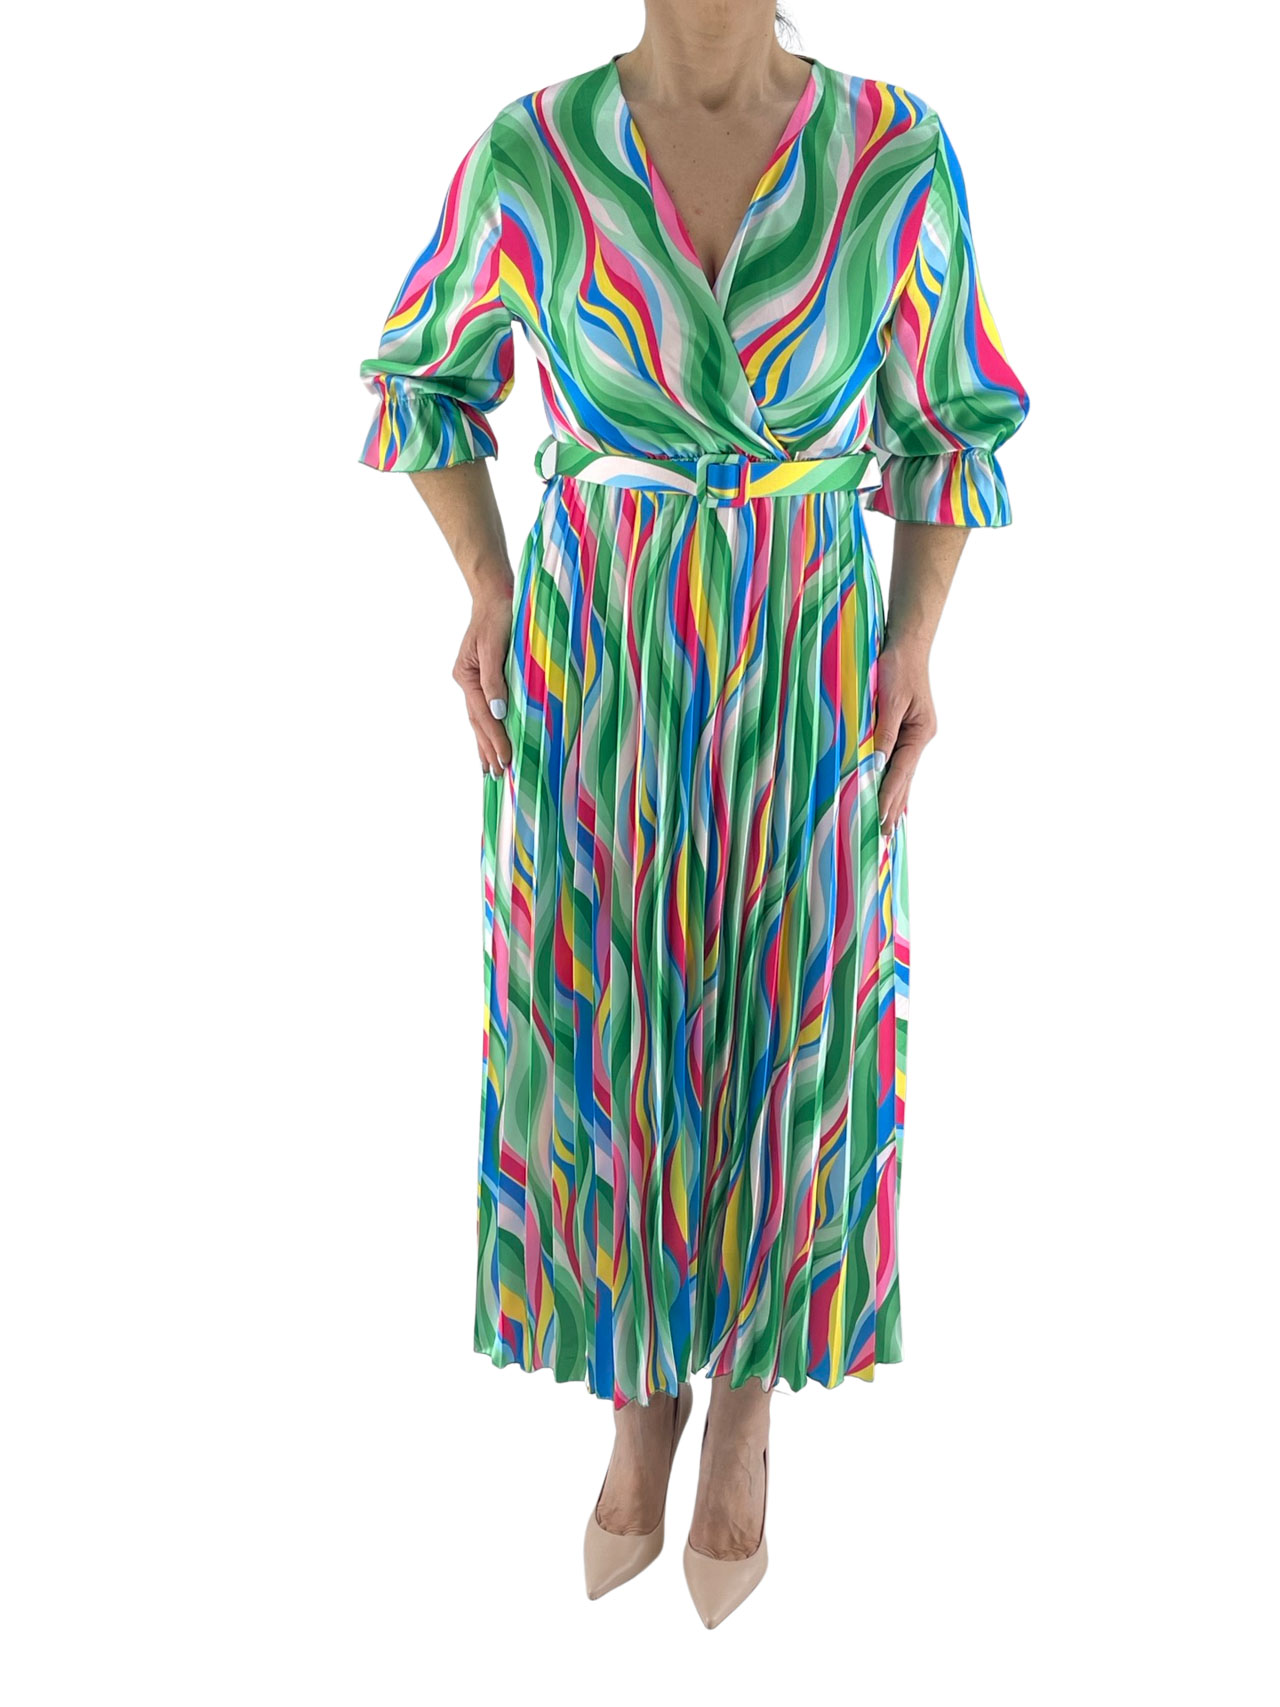 Φόρεμα γυναικείο πολύχρωμο πλισέ κωδ. 81090 μπροστινή όψη